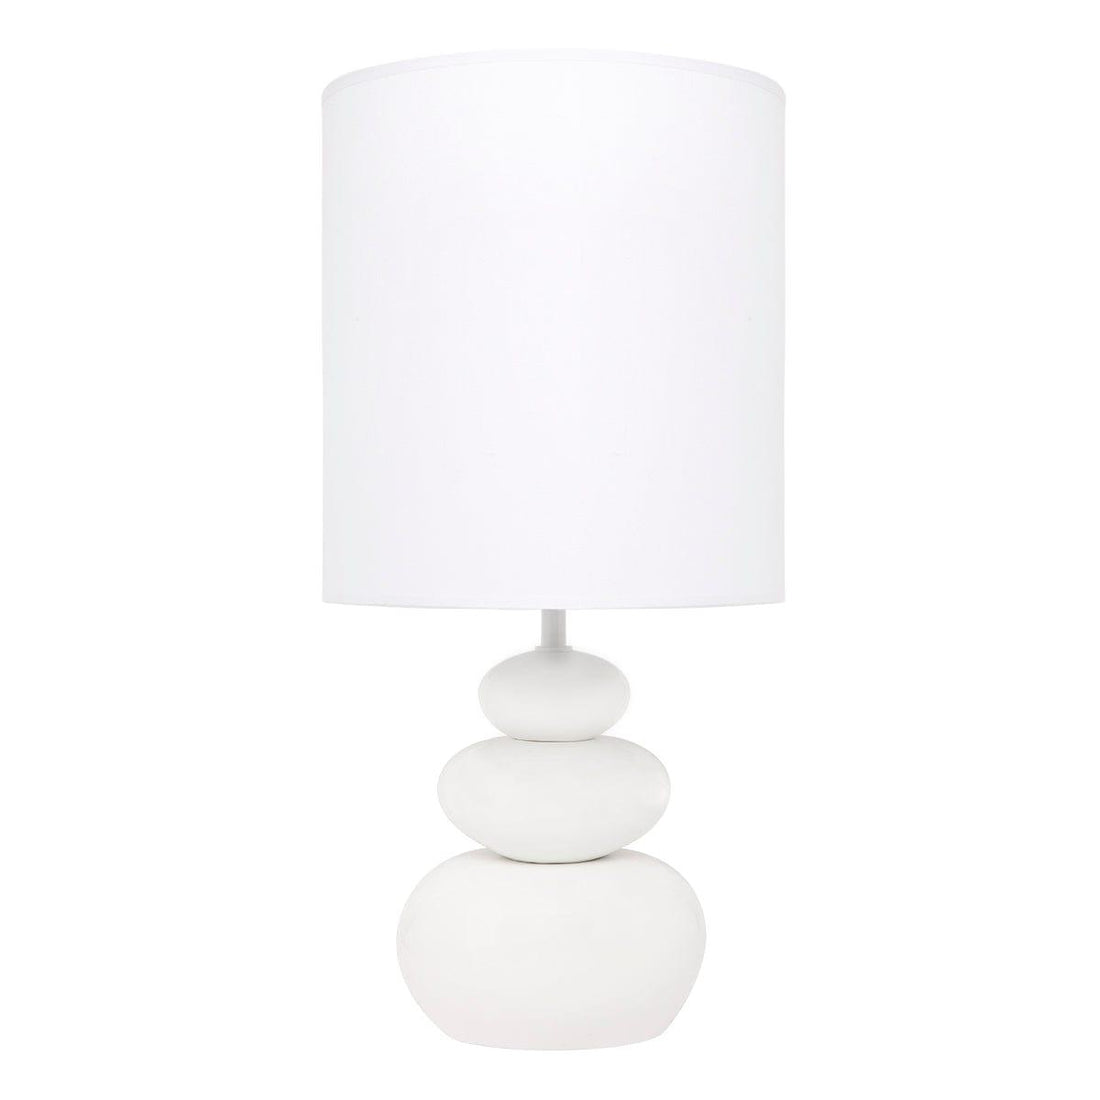 House Journey Table Lamp Koa Table Lamp - White Matt Ceramic